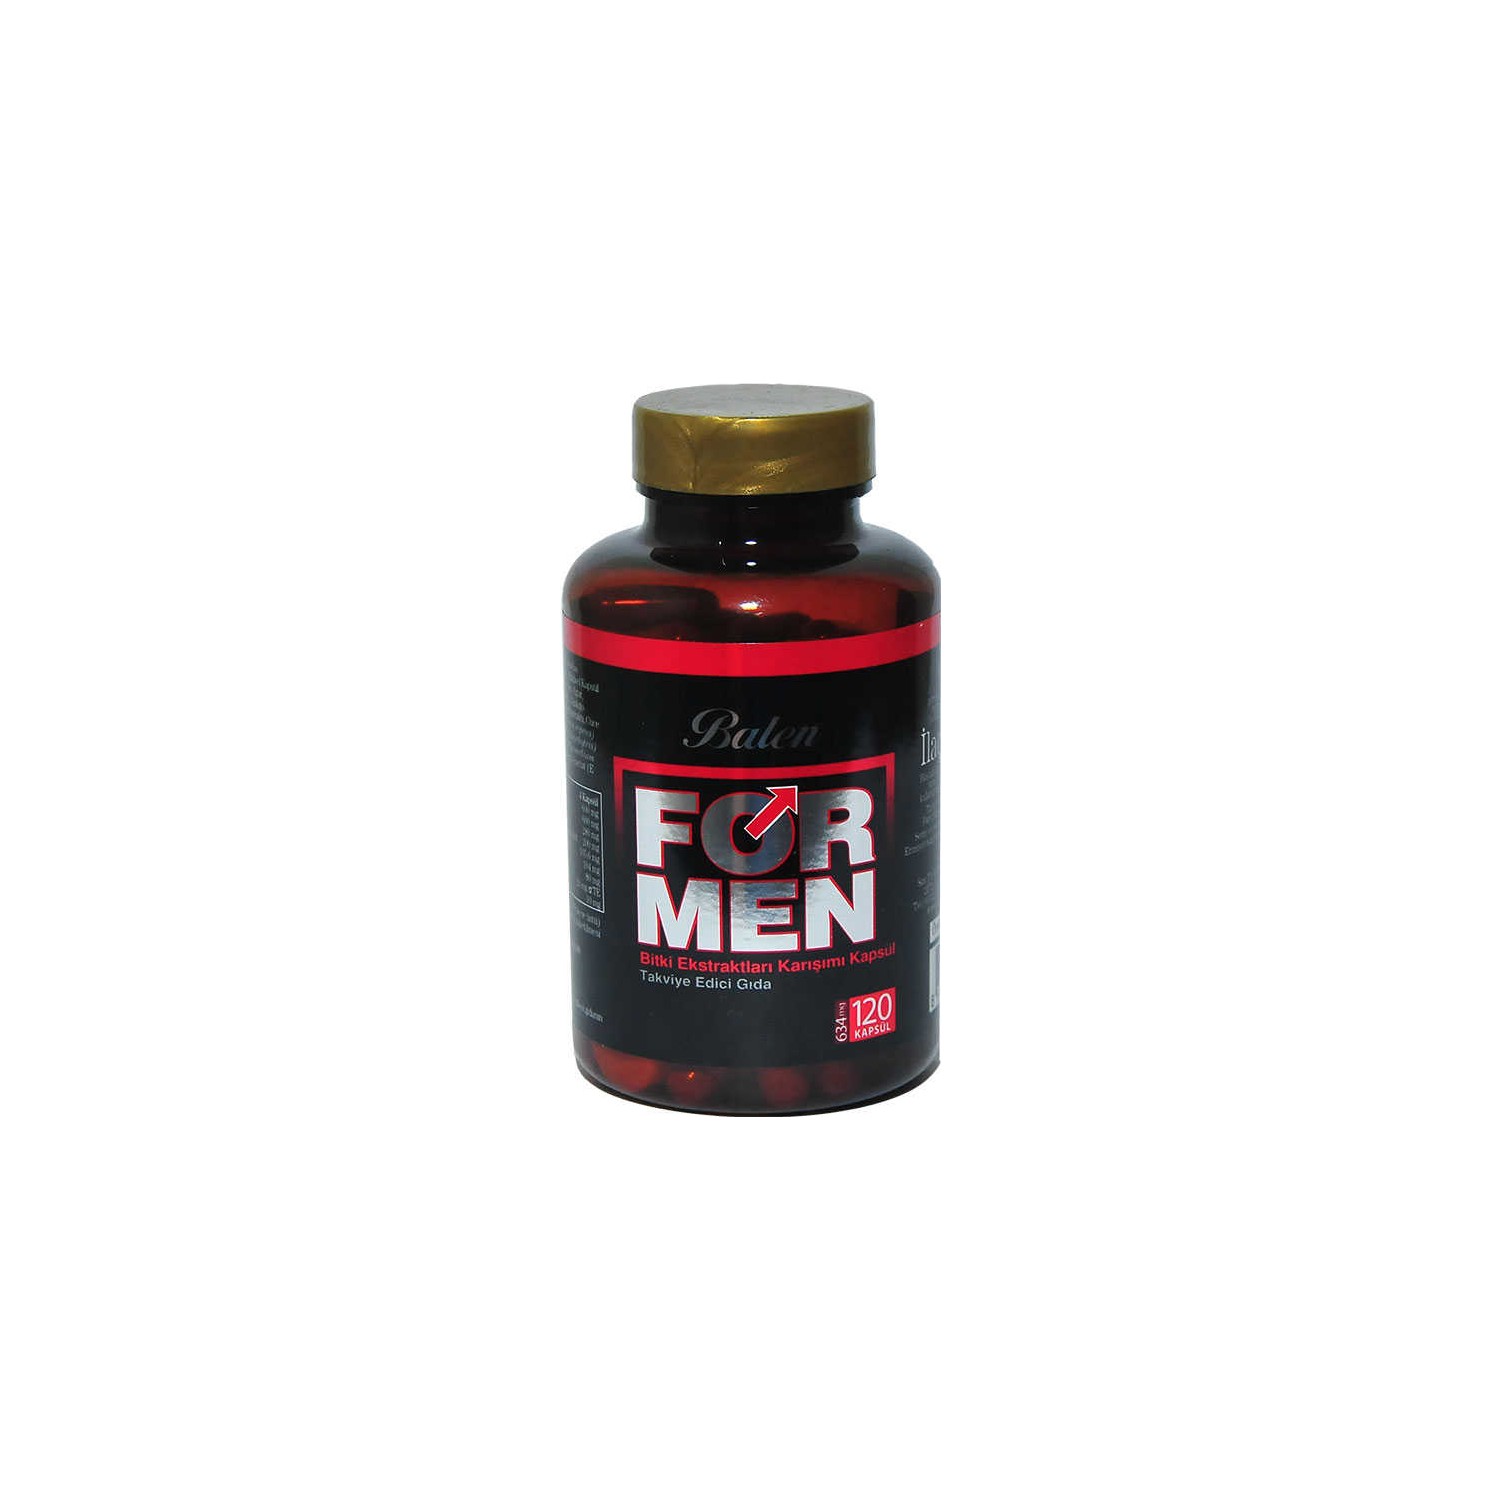 Активная добавка Balen For Men Herbal Mixture 120 капсул, 2 штуки men